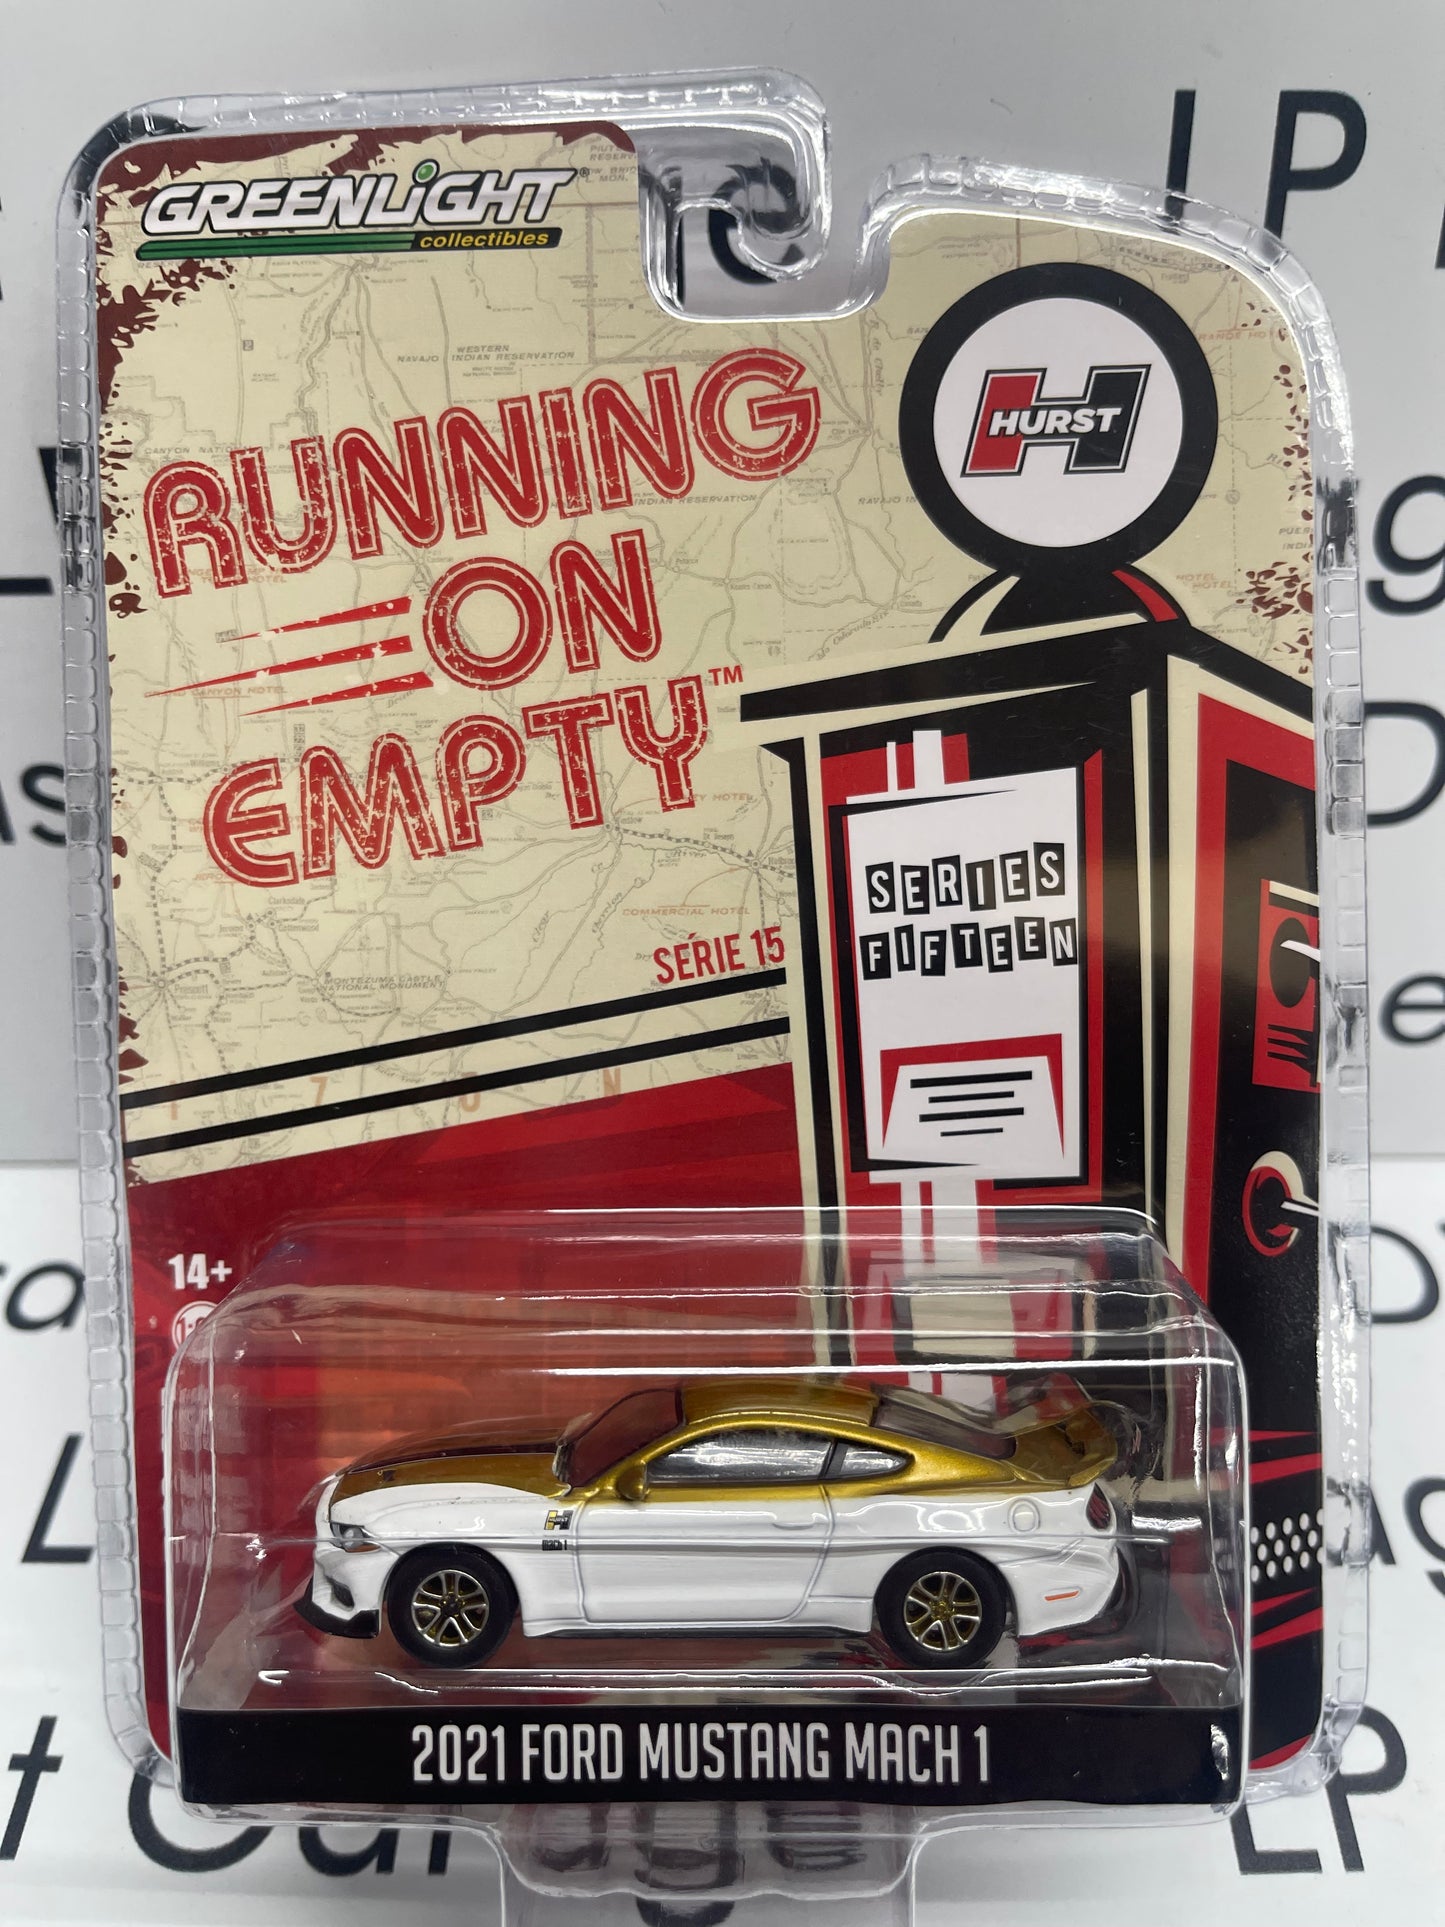 GREENLIGHT 2021 Ford Mustang Mach 1 Running on Empty Hurst Edition 1:64 Diecast